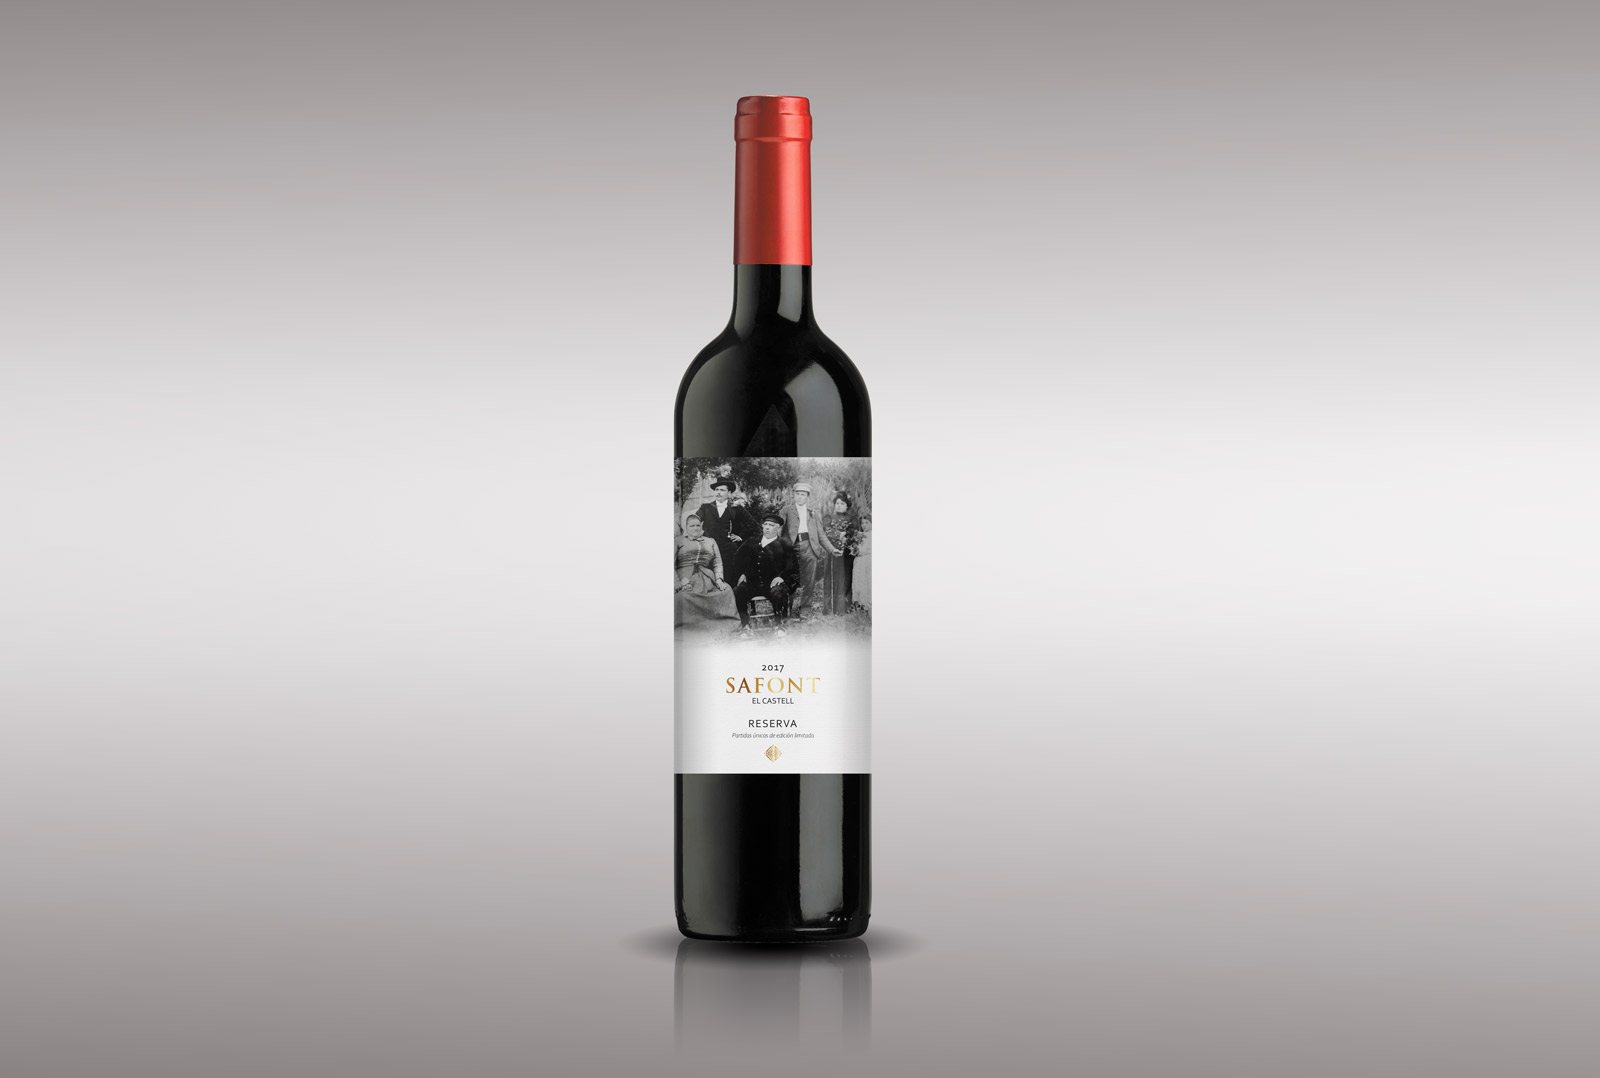 Diseño gráfico y creativo de etiquetas y packaging de vino para FAMILIA SAFONT